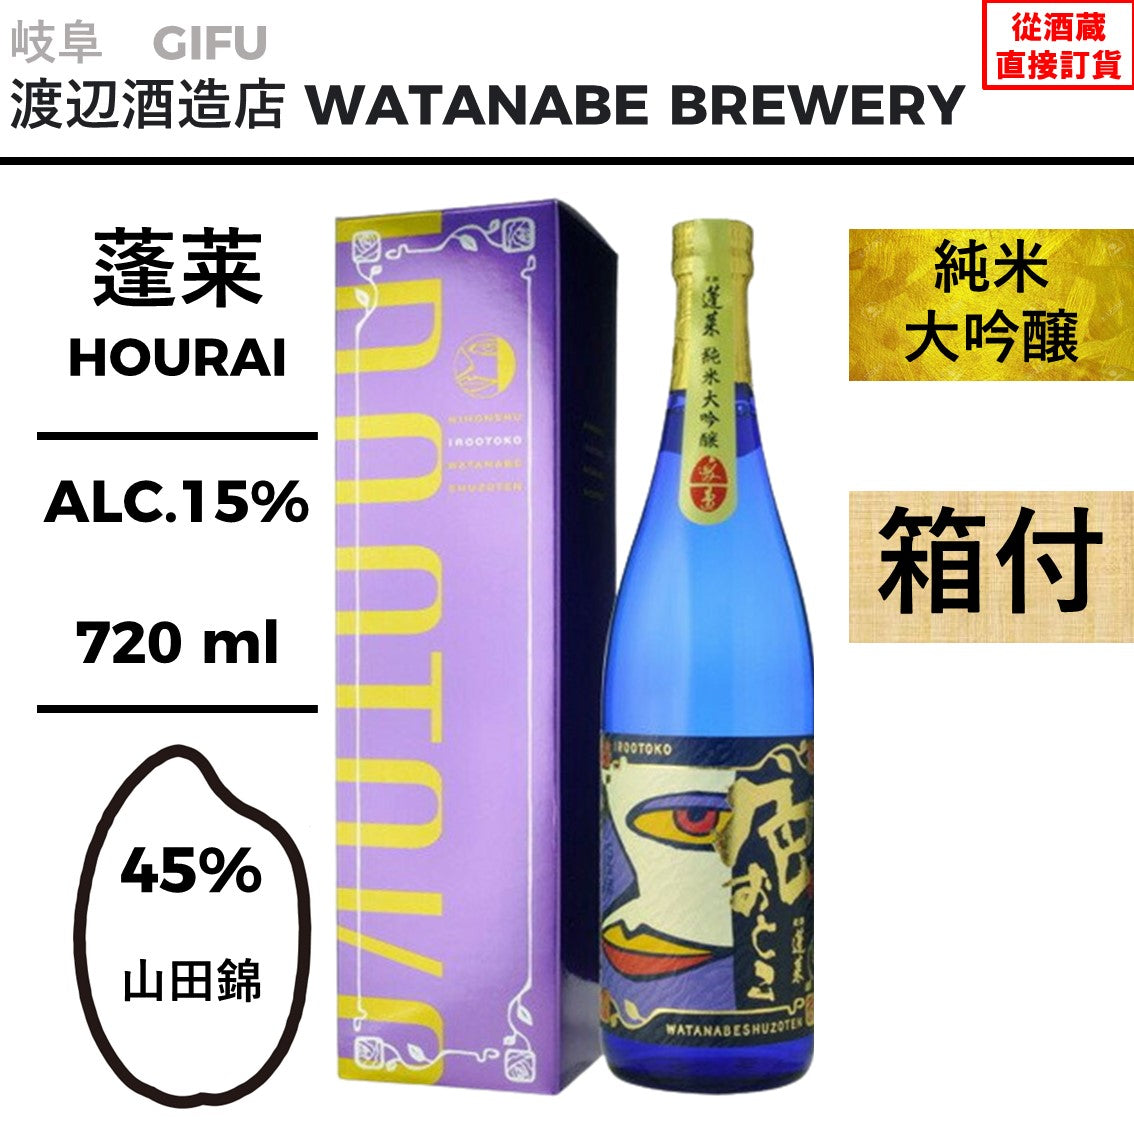 蓬莱純米大吟醸色おとこ– 酒之和Online | 日本清酒網上專賣店